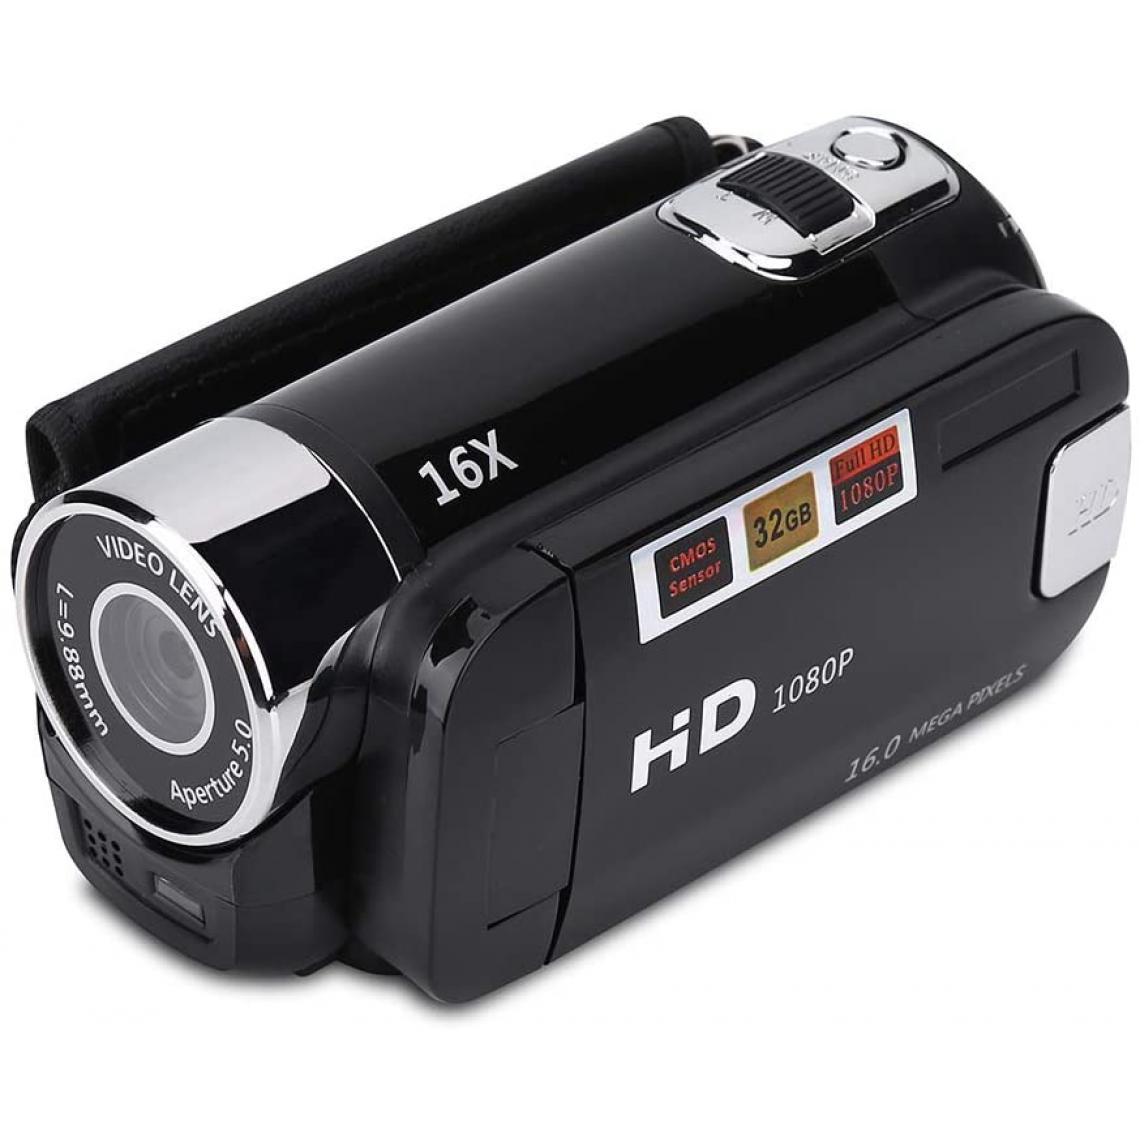 Vendos85 - Caméscope numérique Full HD de 2,7 pouces 1280 x 960 noir + 1 micro SD 16 go - Accessoires caméra